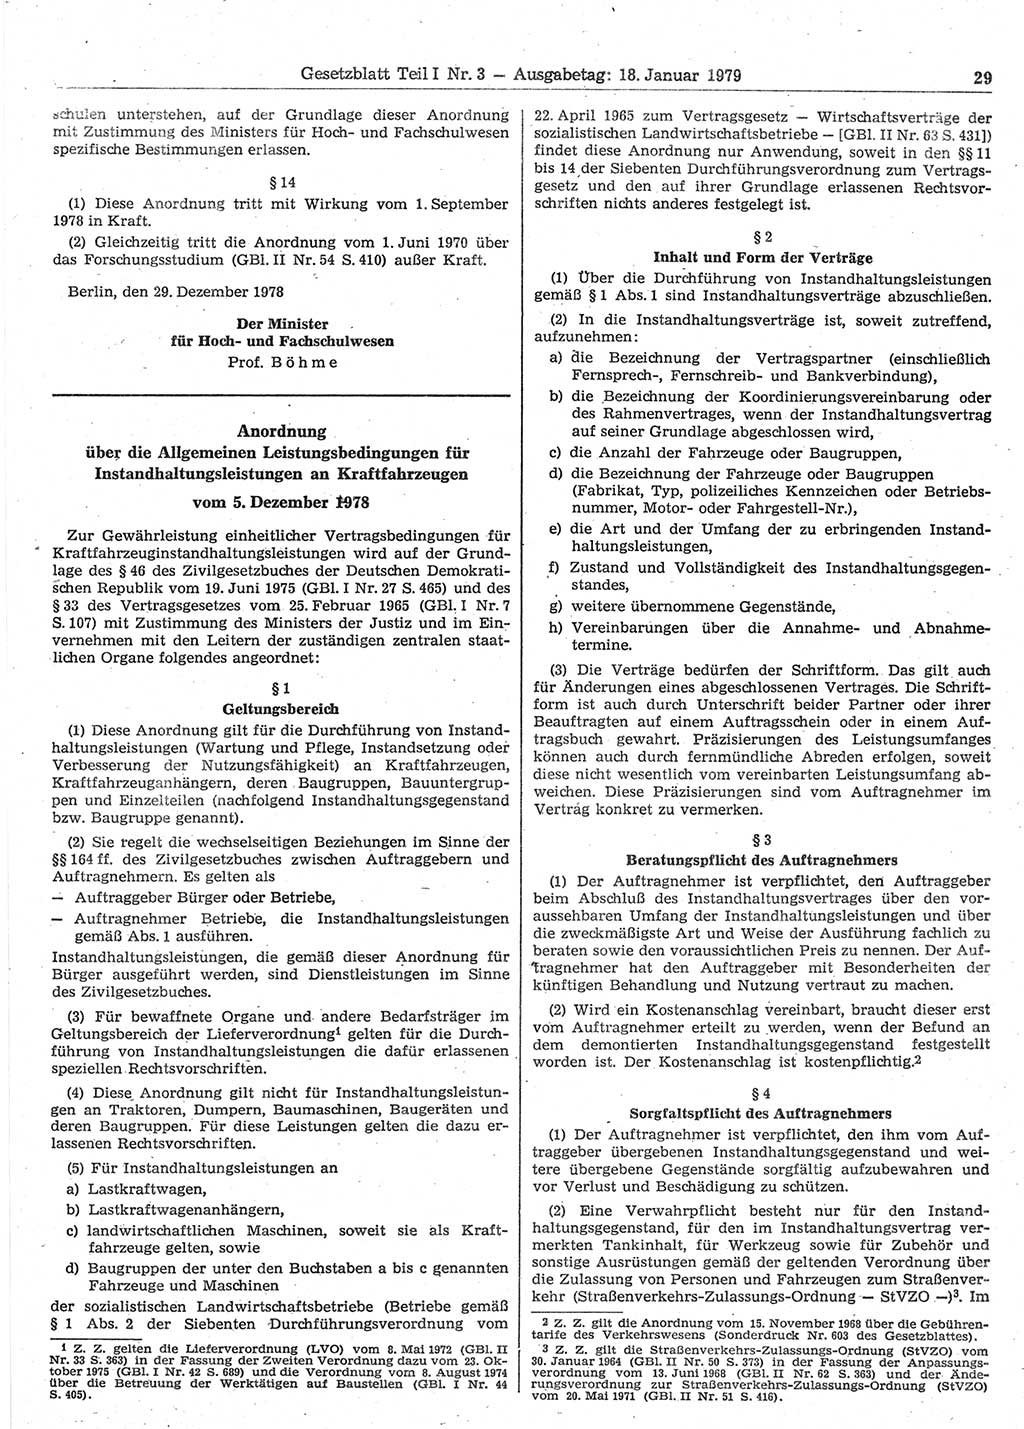 Gesetzblatt (GBl.) der Deutschen Demokratischen Republik (DDR) Teil Ⅰ 1979, Seite 29 (GBl. DDR Ⅰ 1979, S. 29)